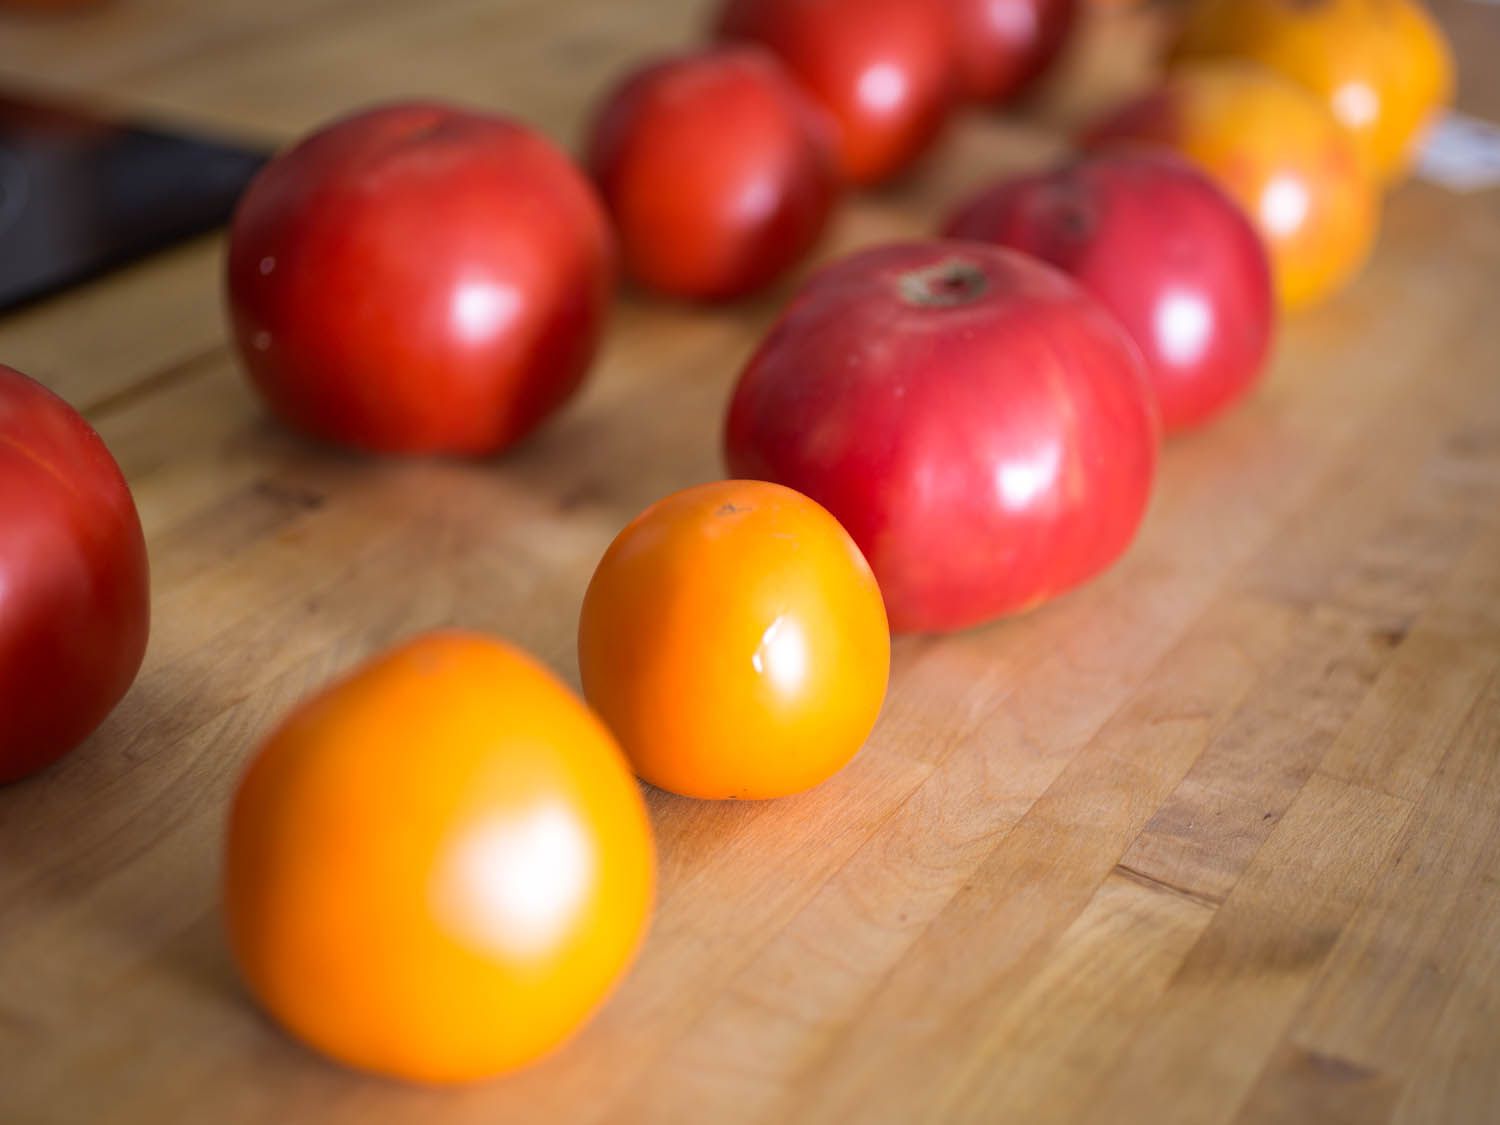 20140922 -番茄-测试- - 3 -维姬-沃斯克- 3.部分jpg